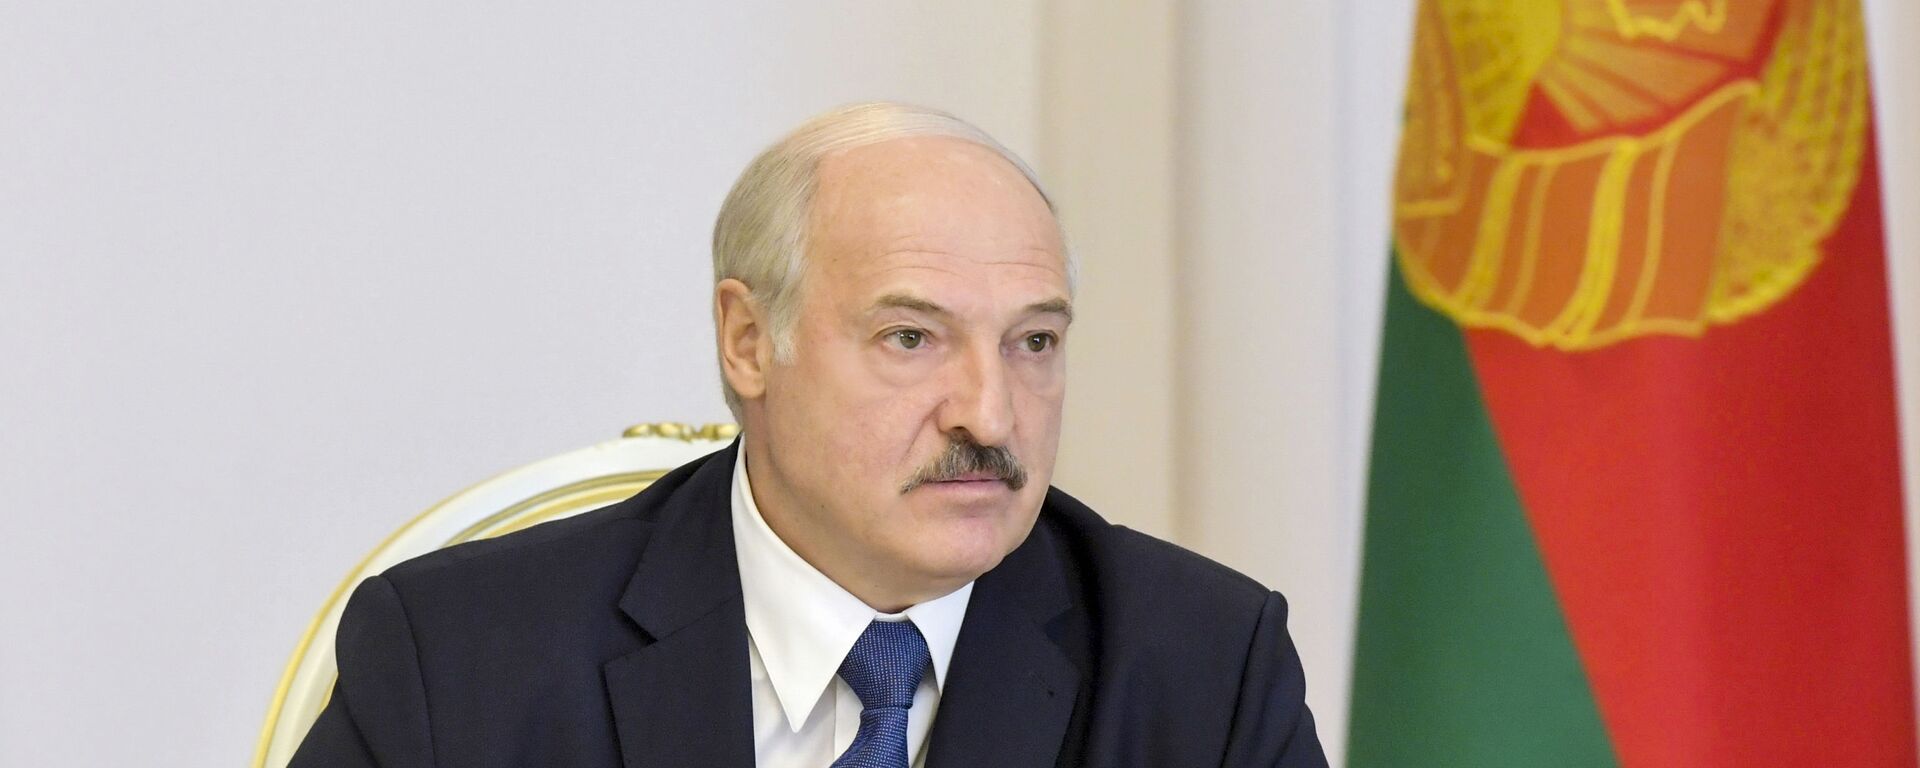 Tổng thống Belarus Alexander Lukashenko phát biểu tại Hội đồng Bảo an ở Minsk - Sputnik Việt Nam, 1920, 09.05.2021